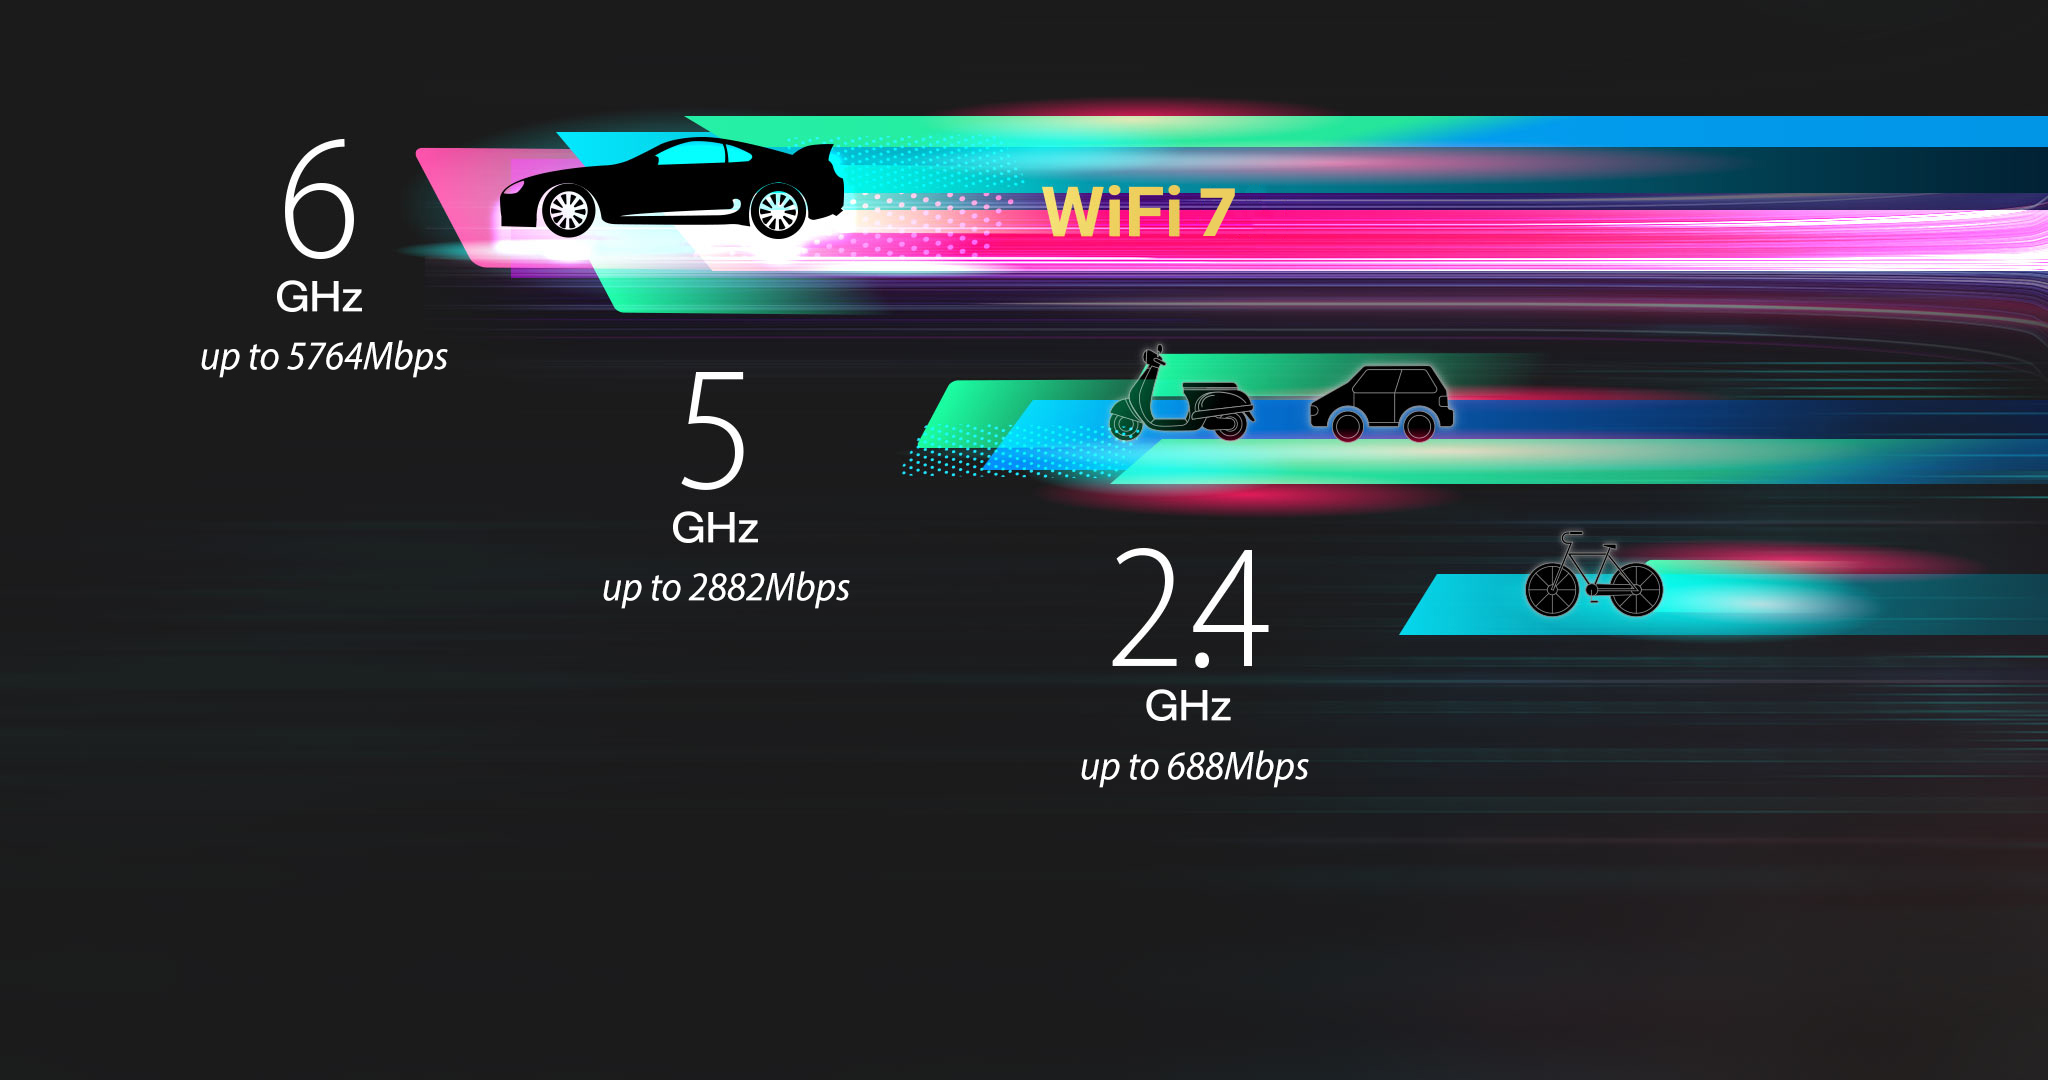 WiFi 7 6GHz Band mit 320MHz Kanälen, die die Geschwindigkeit auf bis zu 5764Mbps erhöhen.